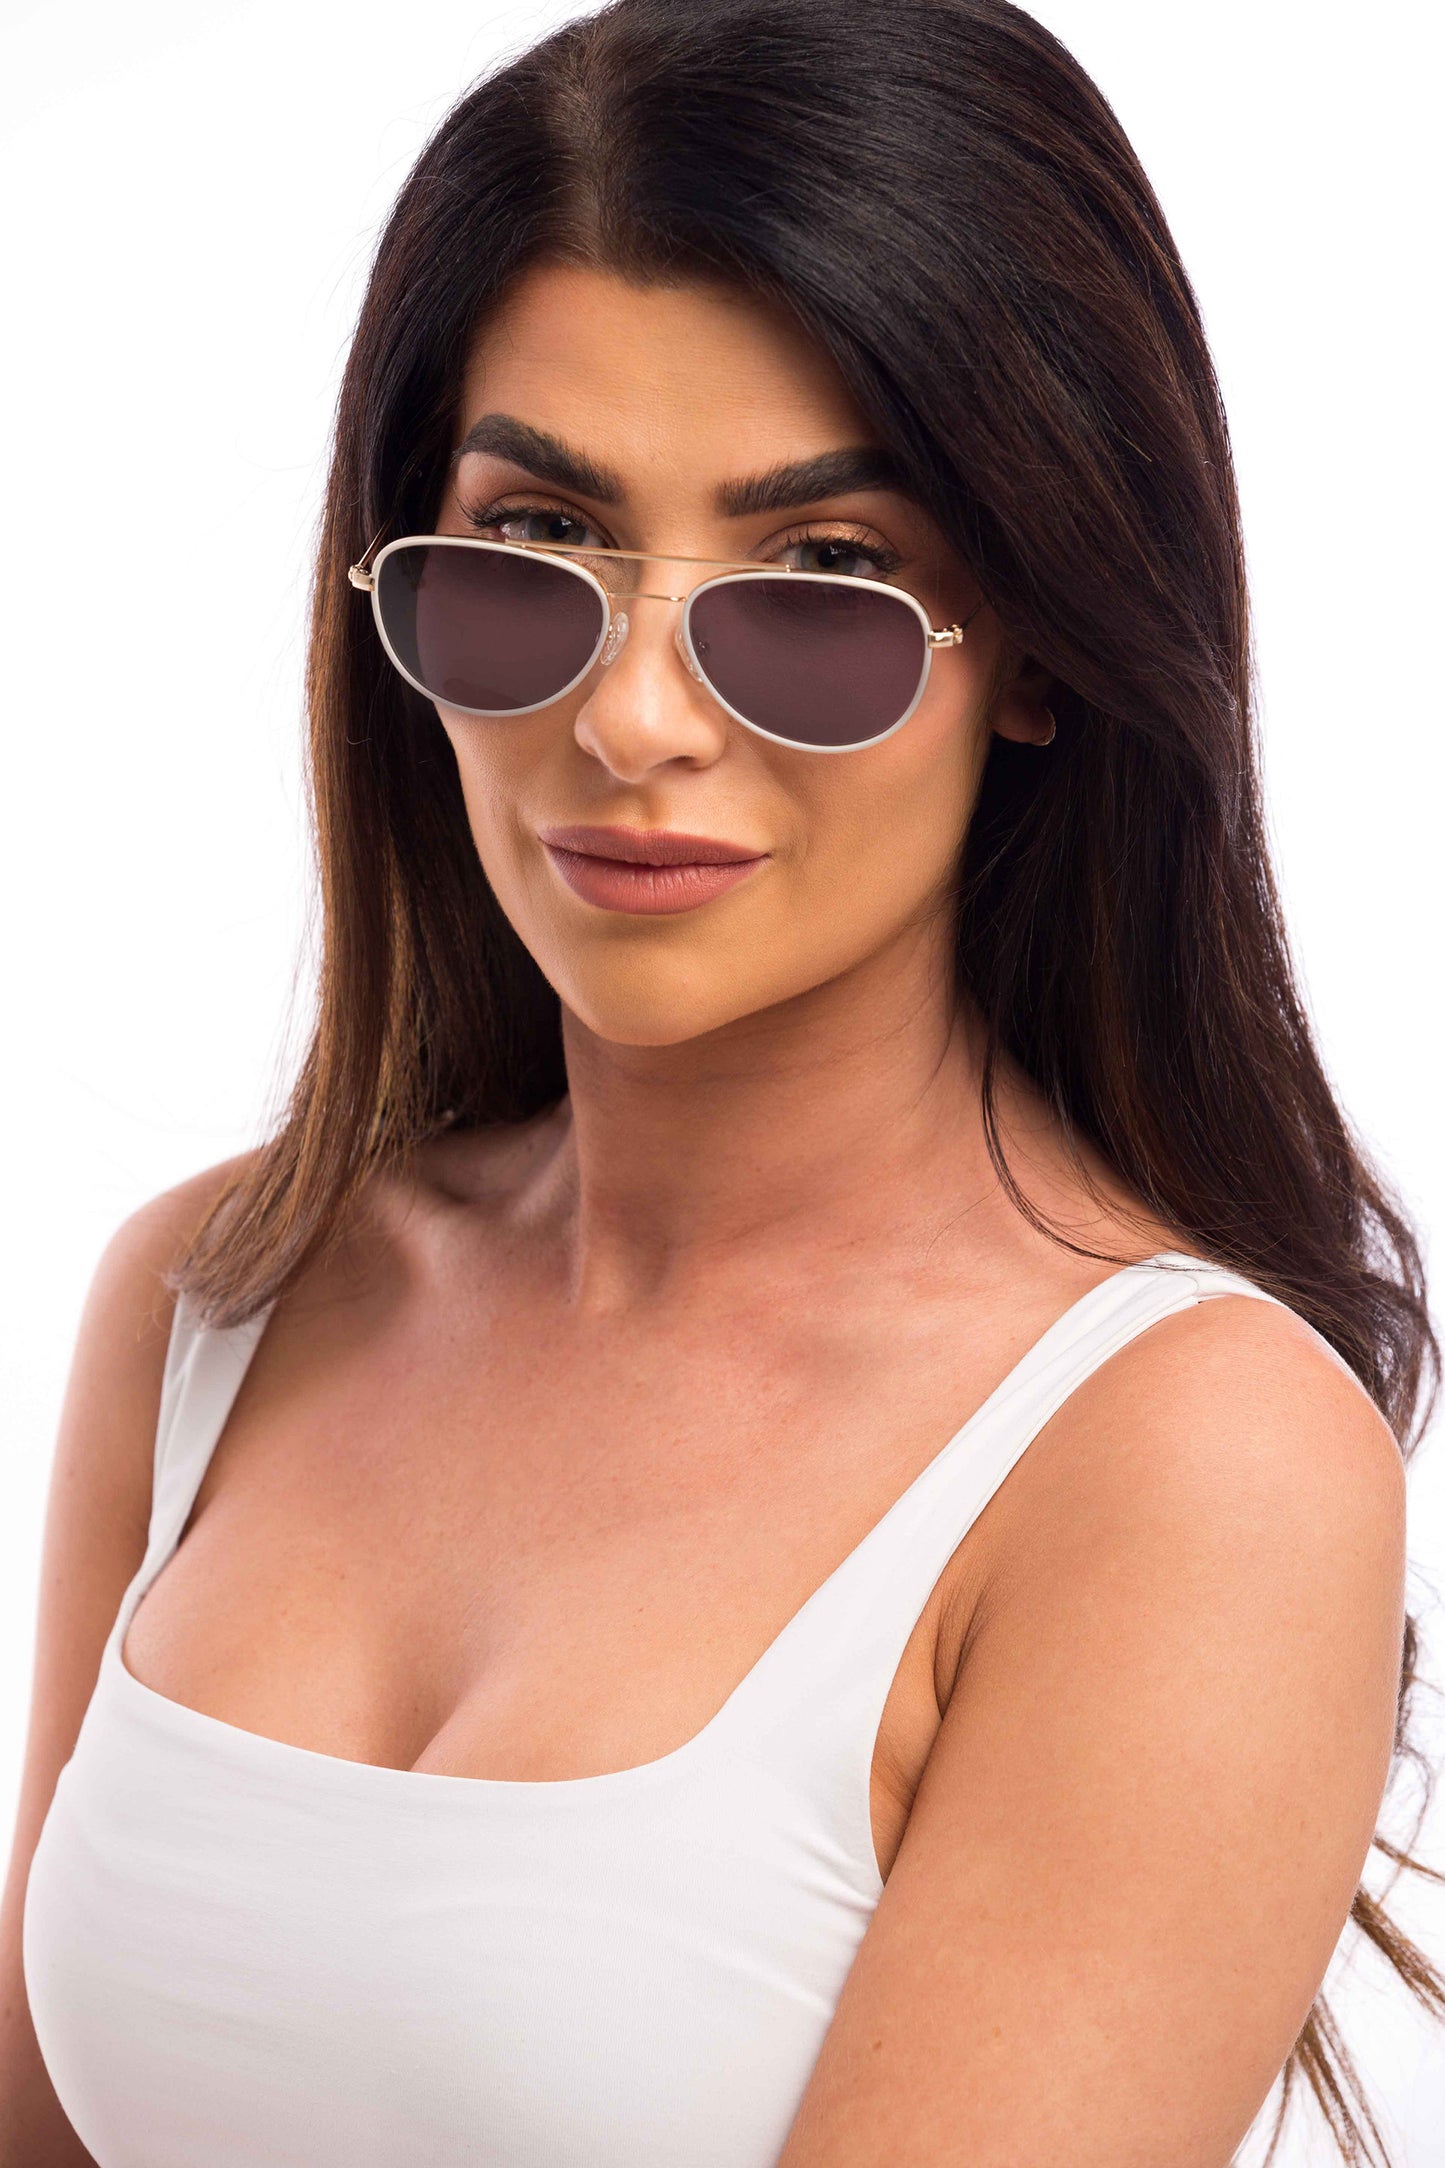 Cali Sunglasses Prescription (Grey)